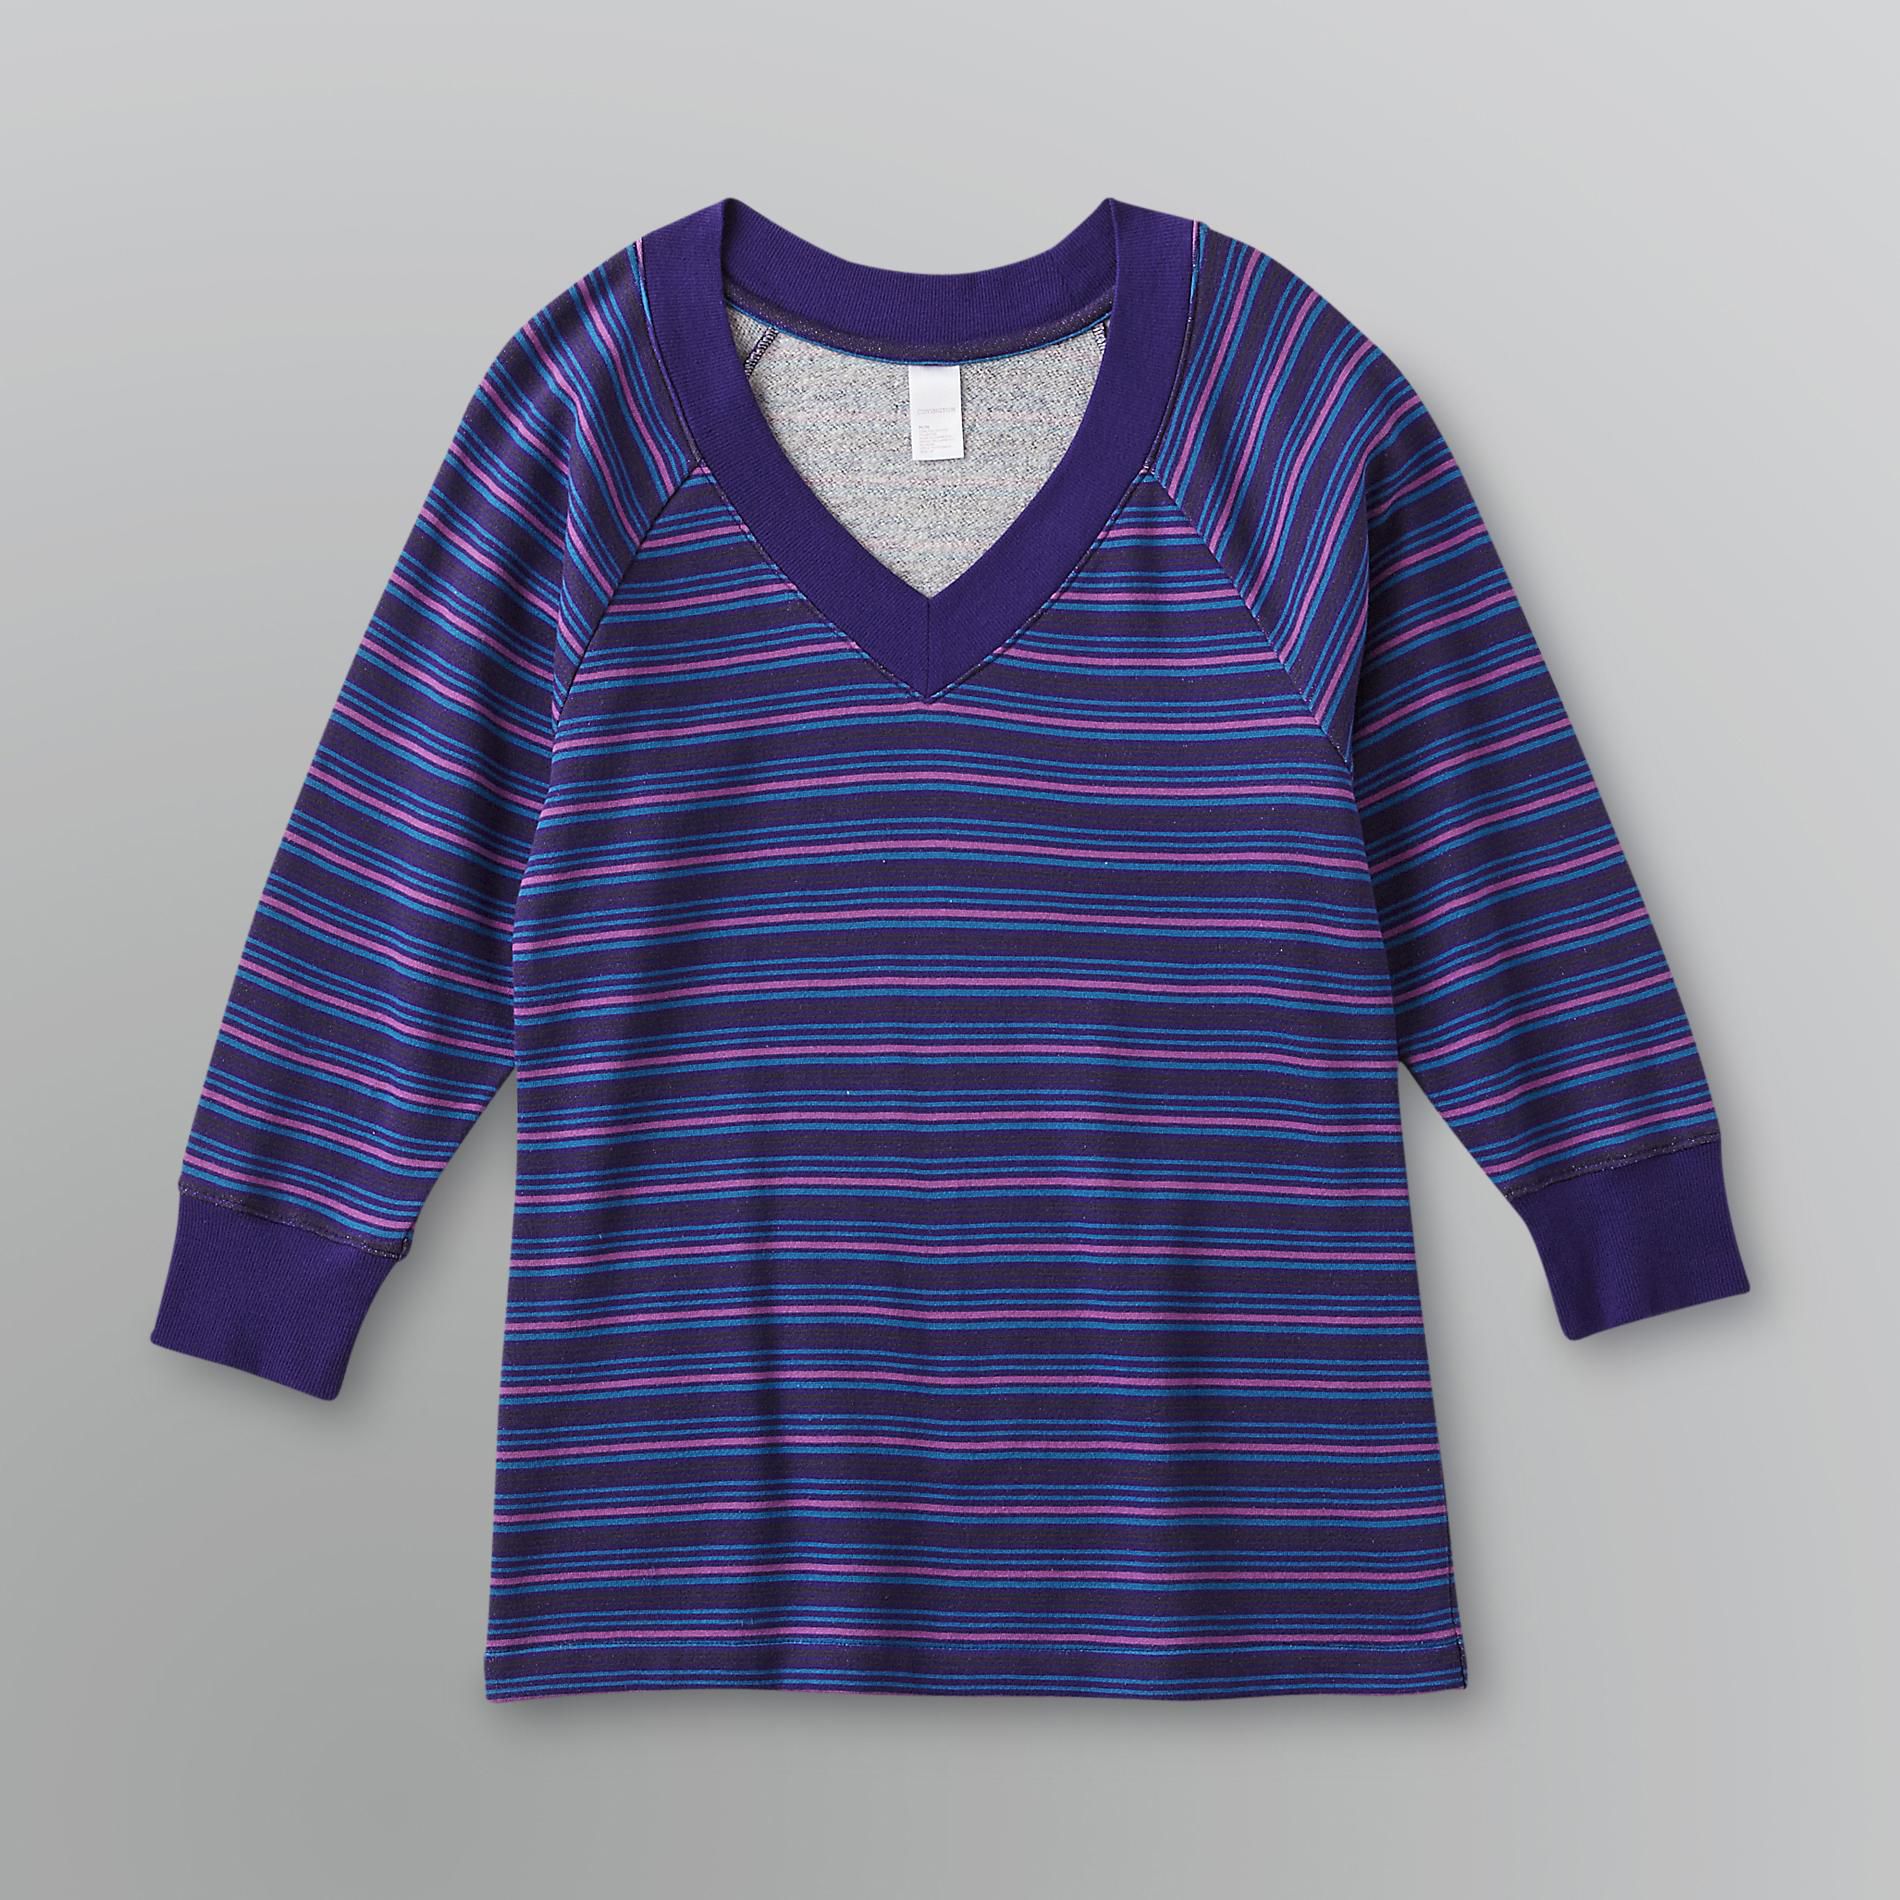 Covington Women's V-Neck Loungewear Sweatshirt - Striped